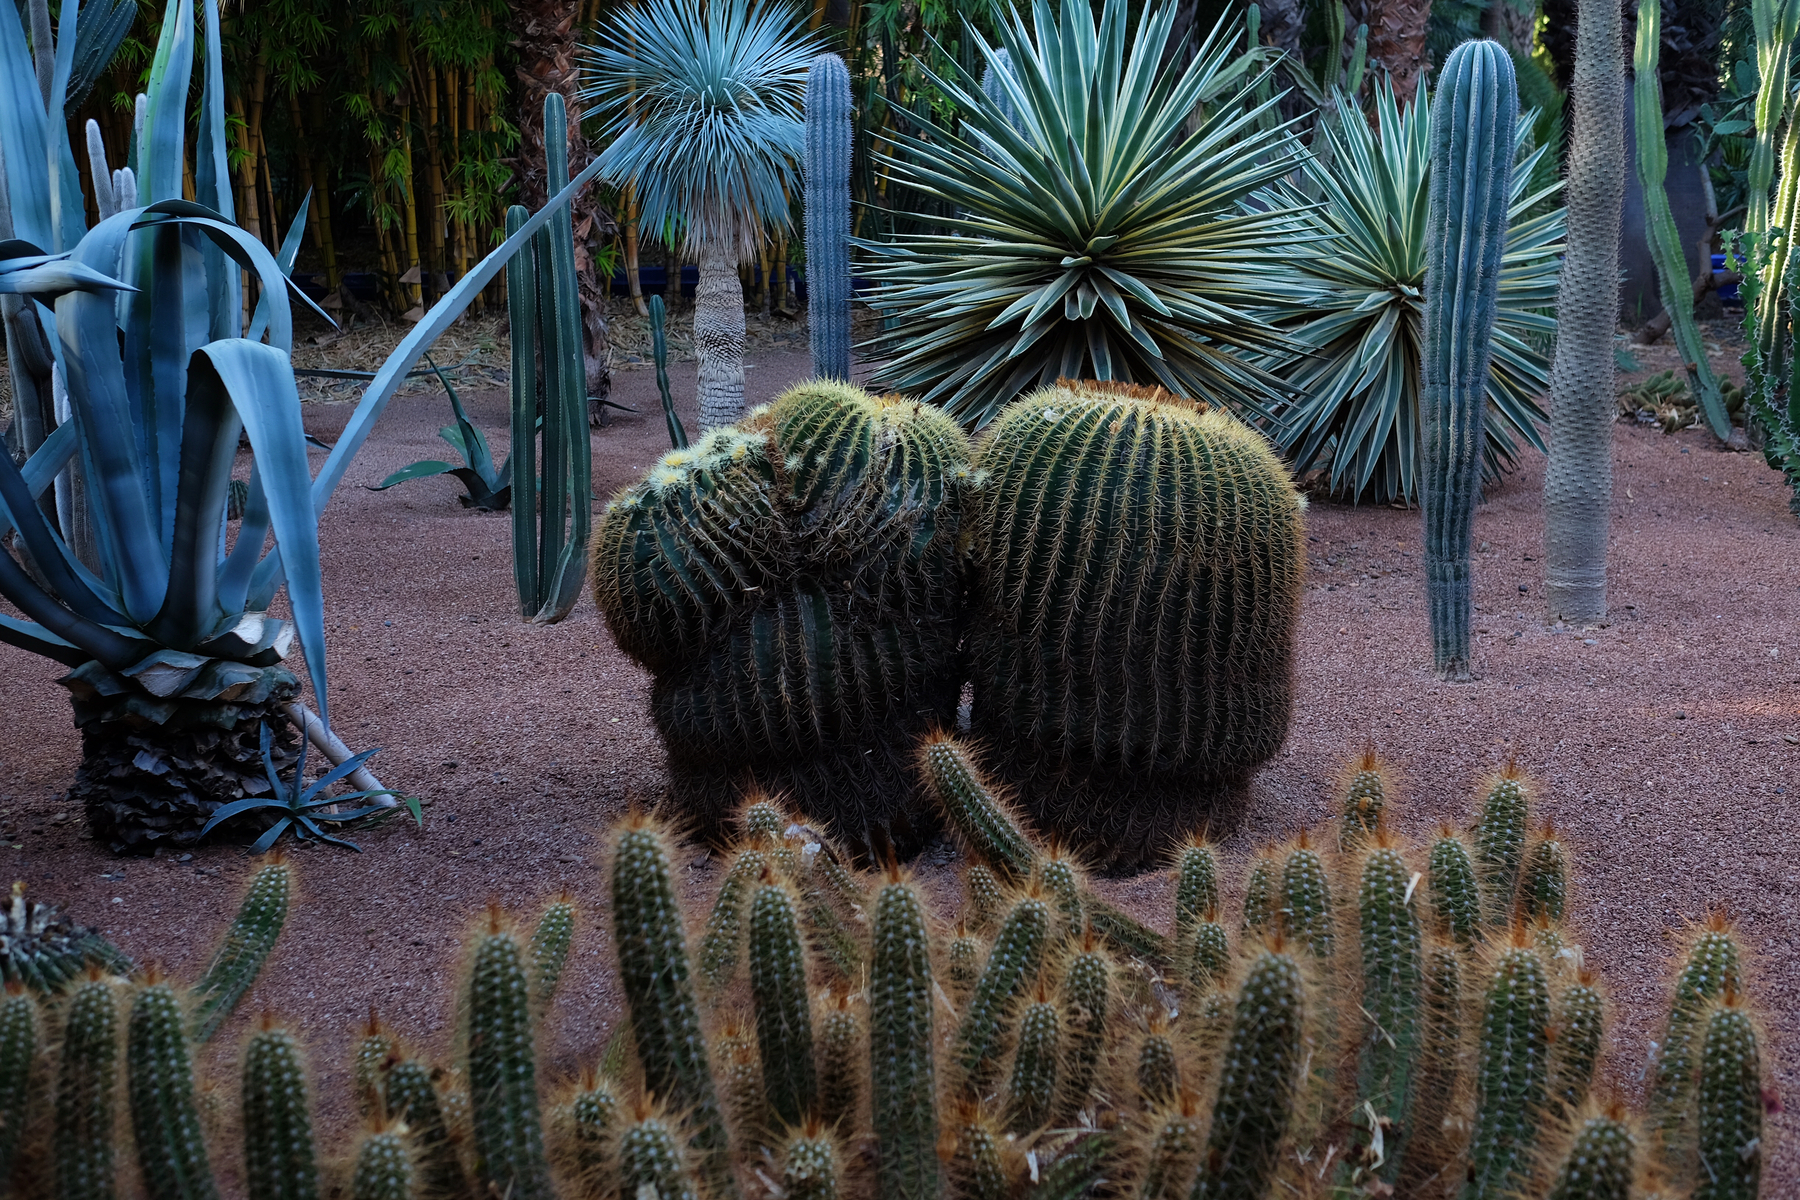 Cacti in a garden. 